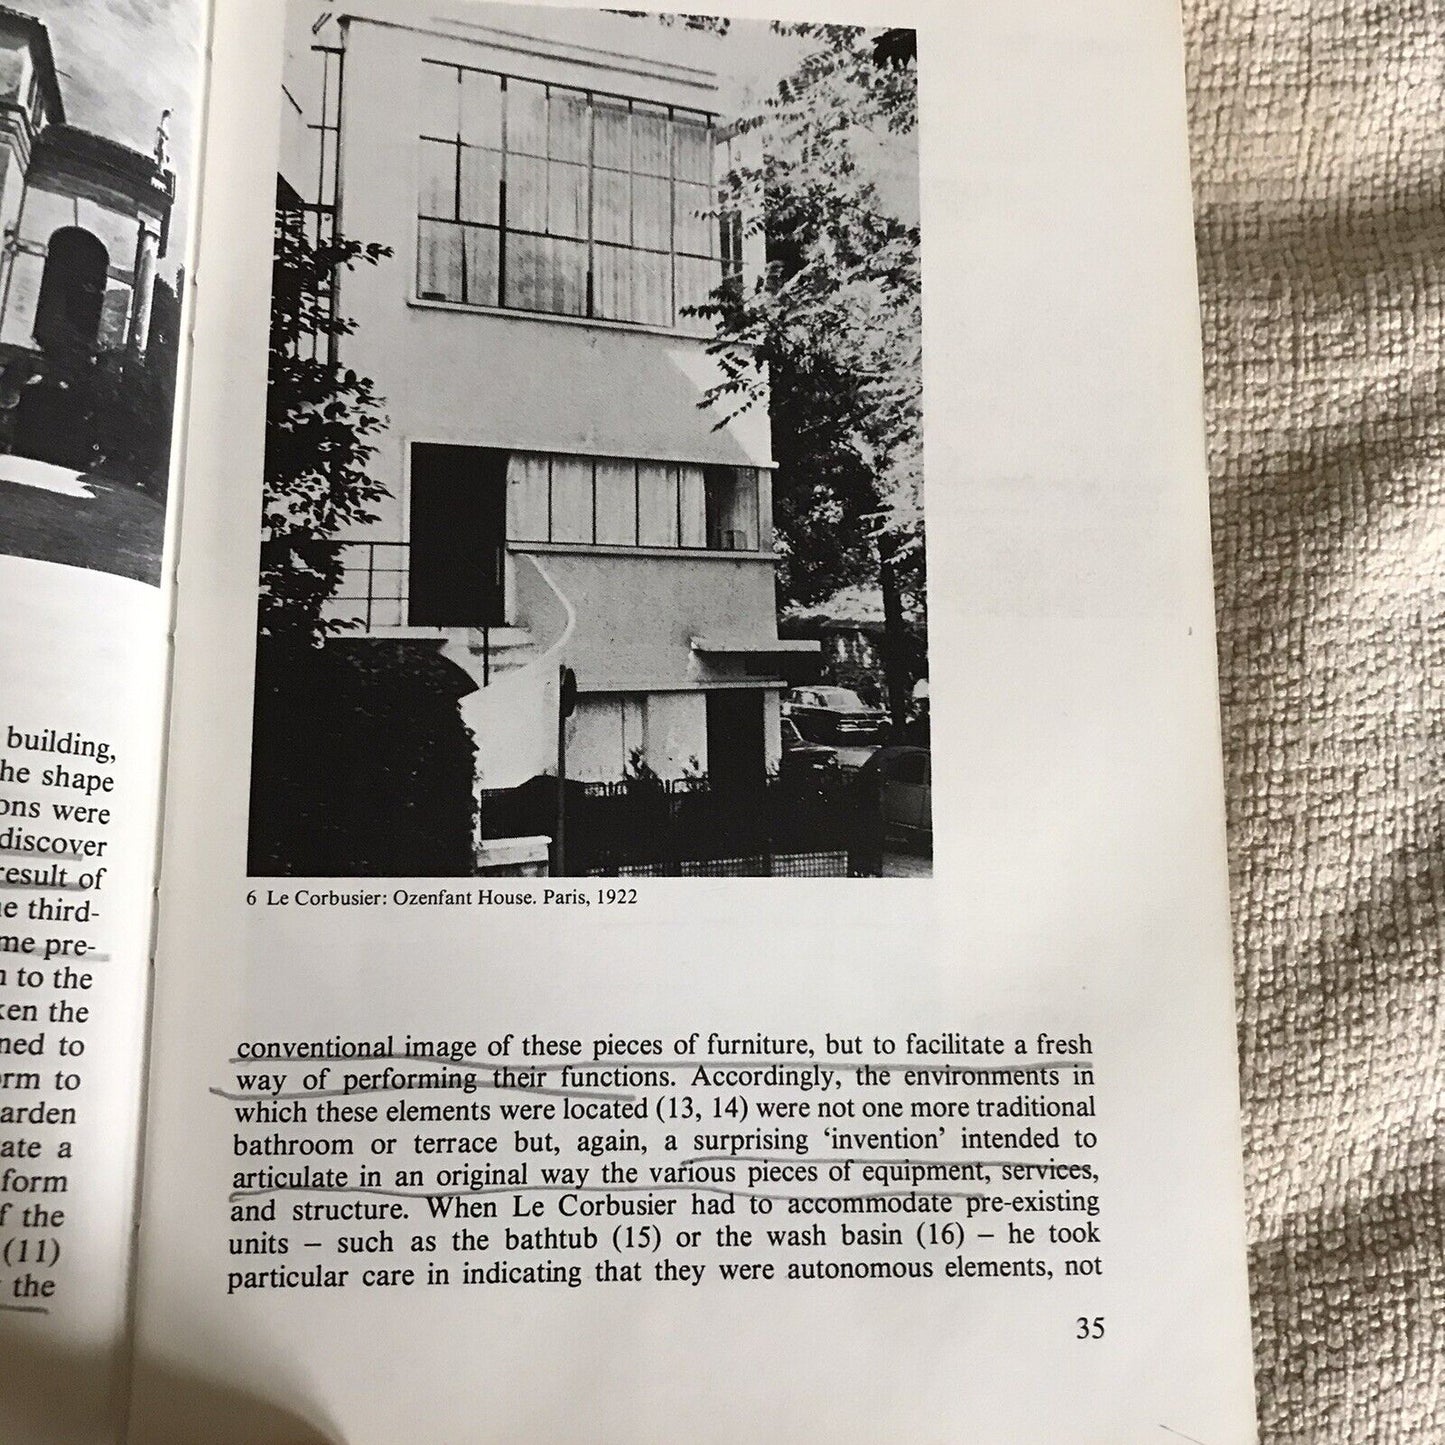 1979*1.* Architektur und ihre Interpretation – Juan Pablo Bonta (Lund Humphries)